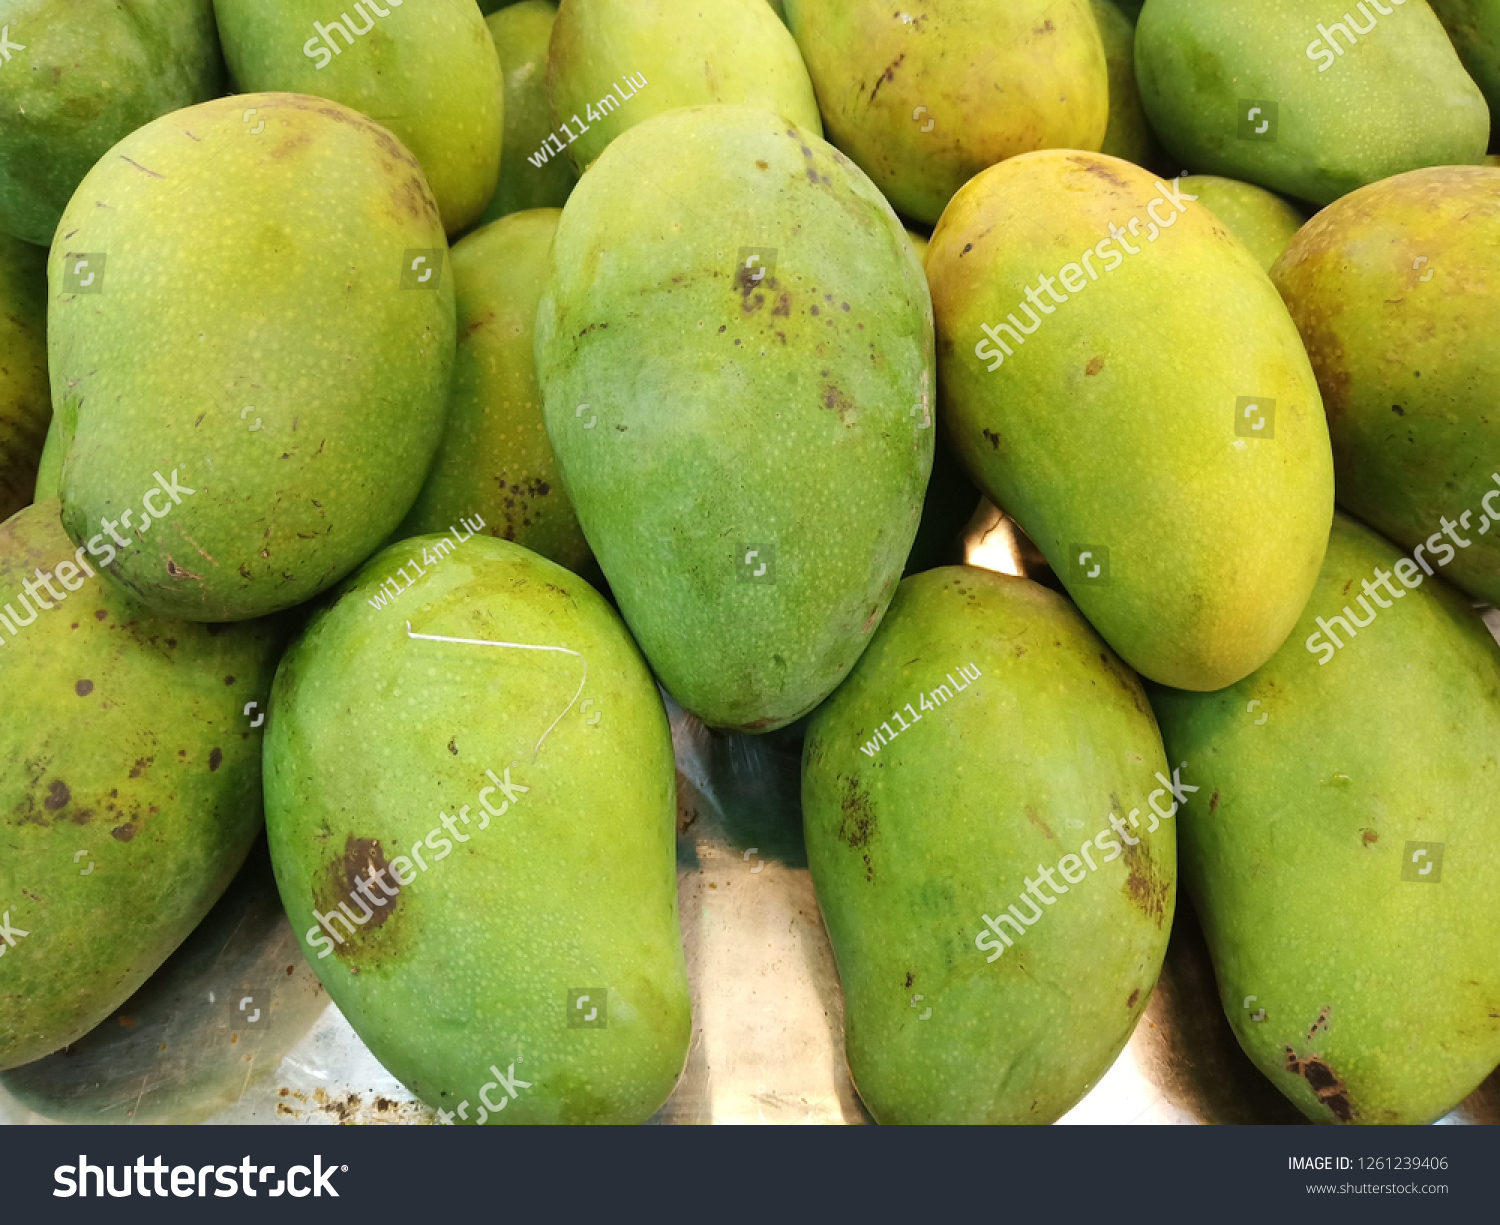 Manggo or mango